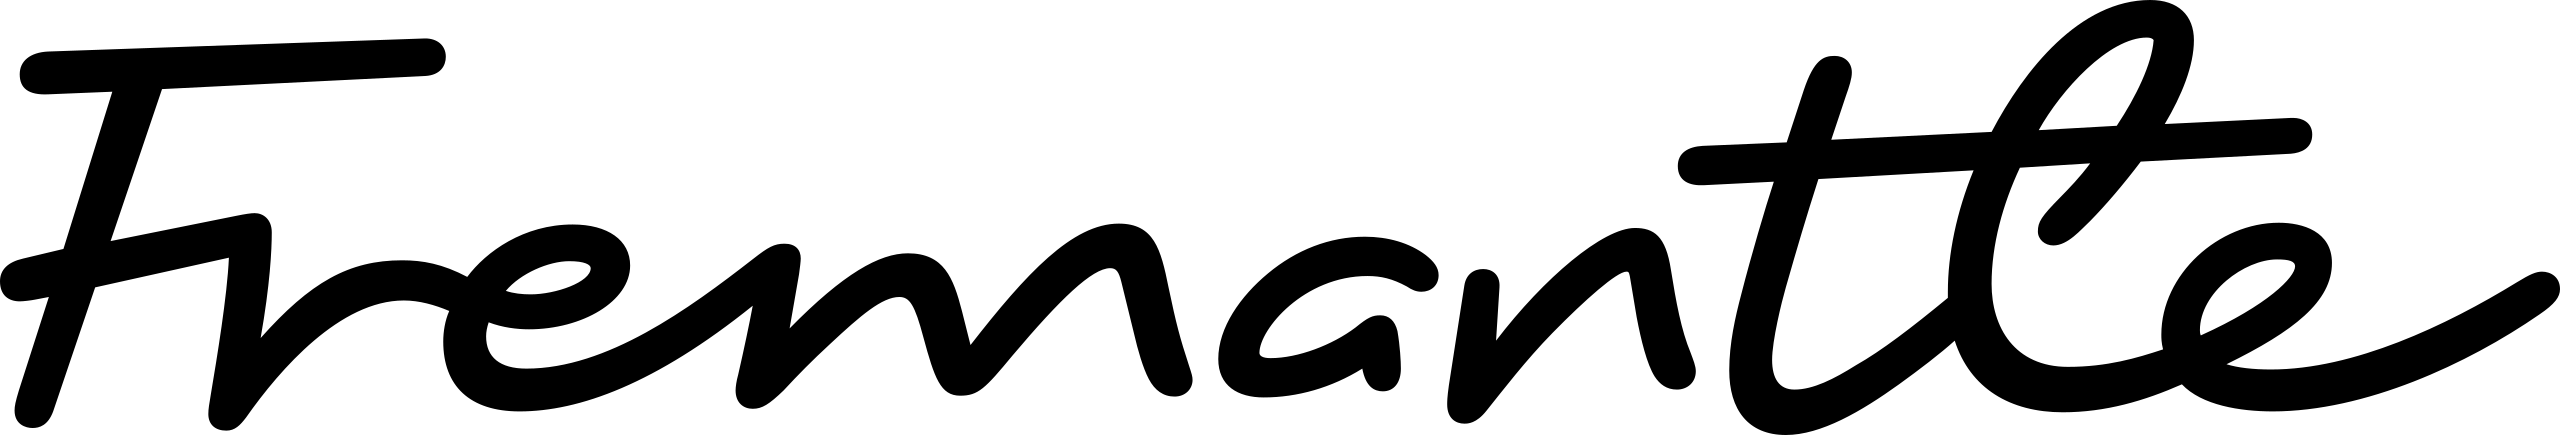 2560px-Fremantle_2018_logo.svg